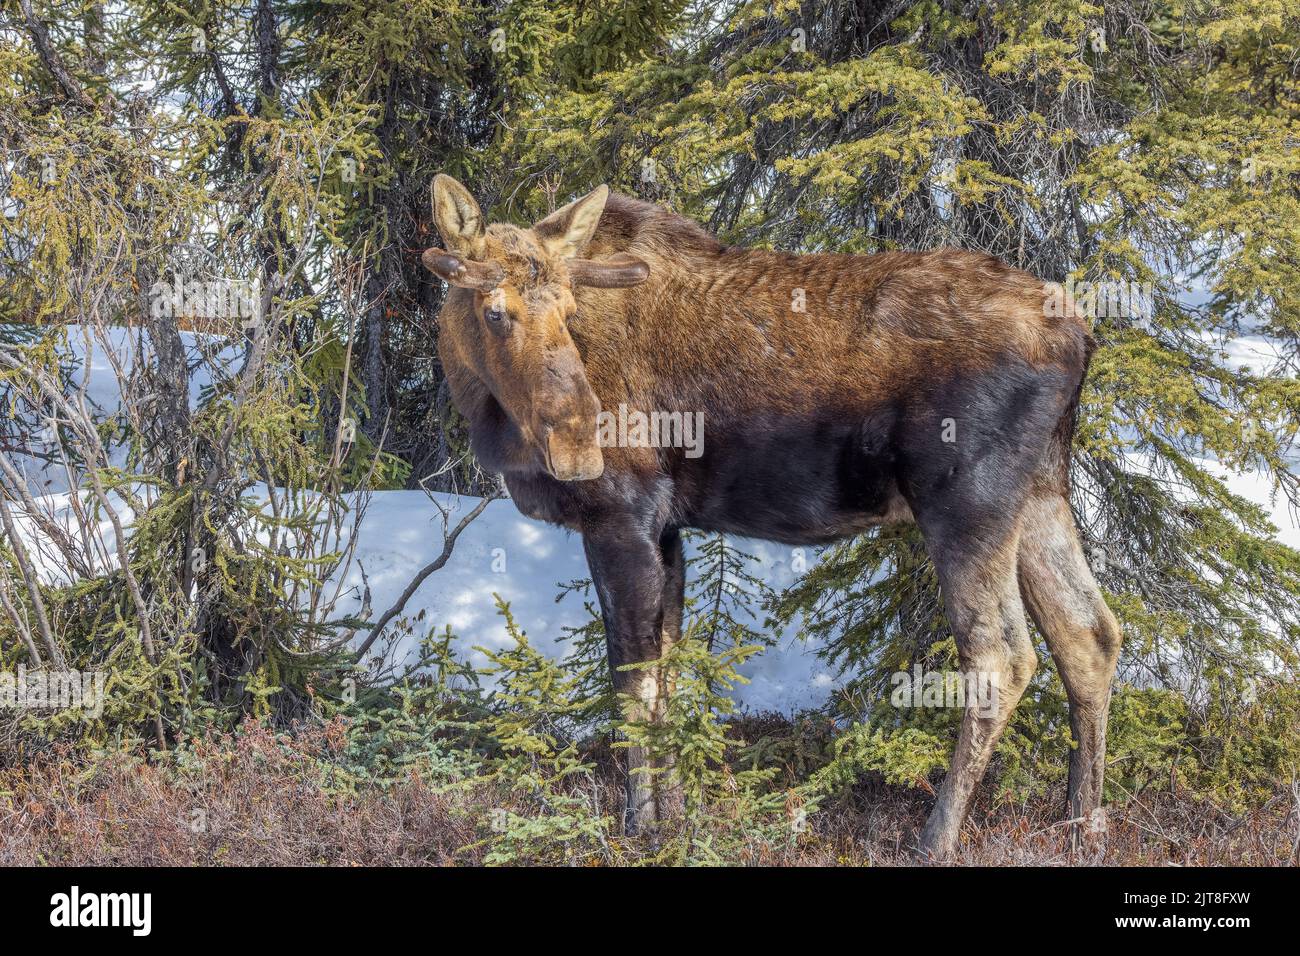 A Cow Moose in Alaska Stock Photo